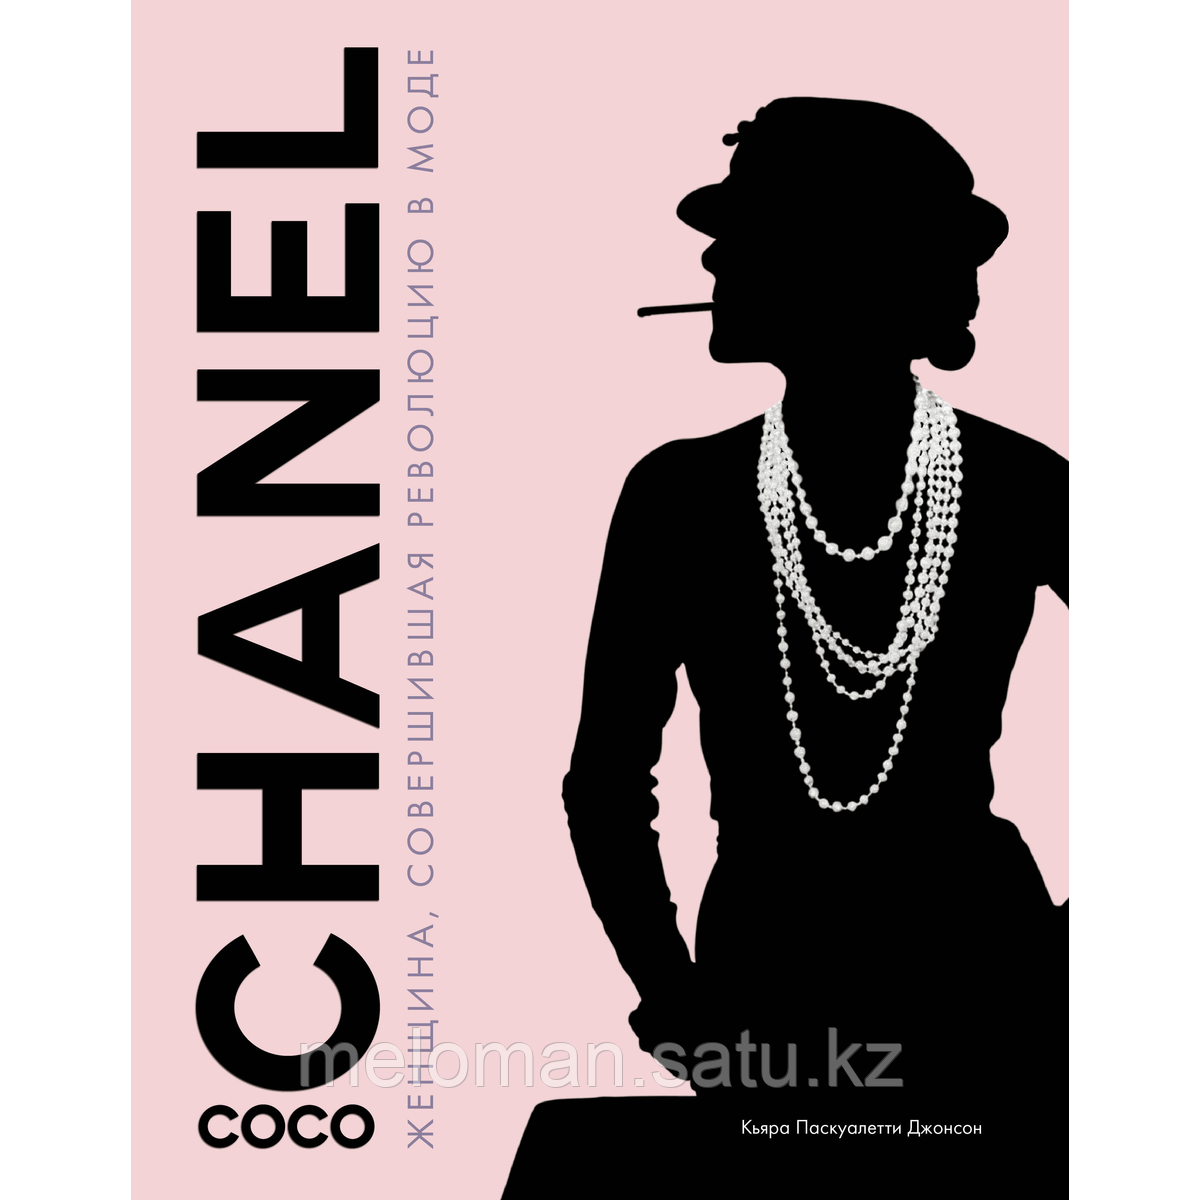 Джонсон К. П.: Коко Шанель. Женщина, совершившая революцию в моде